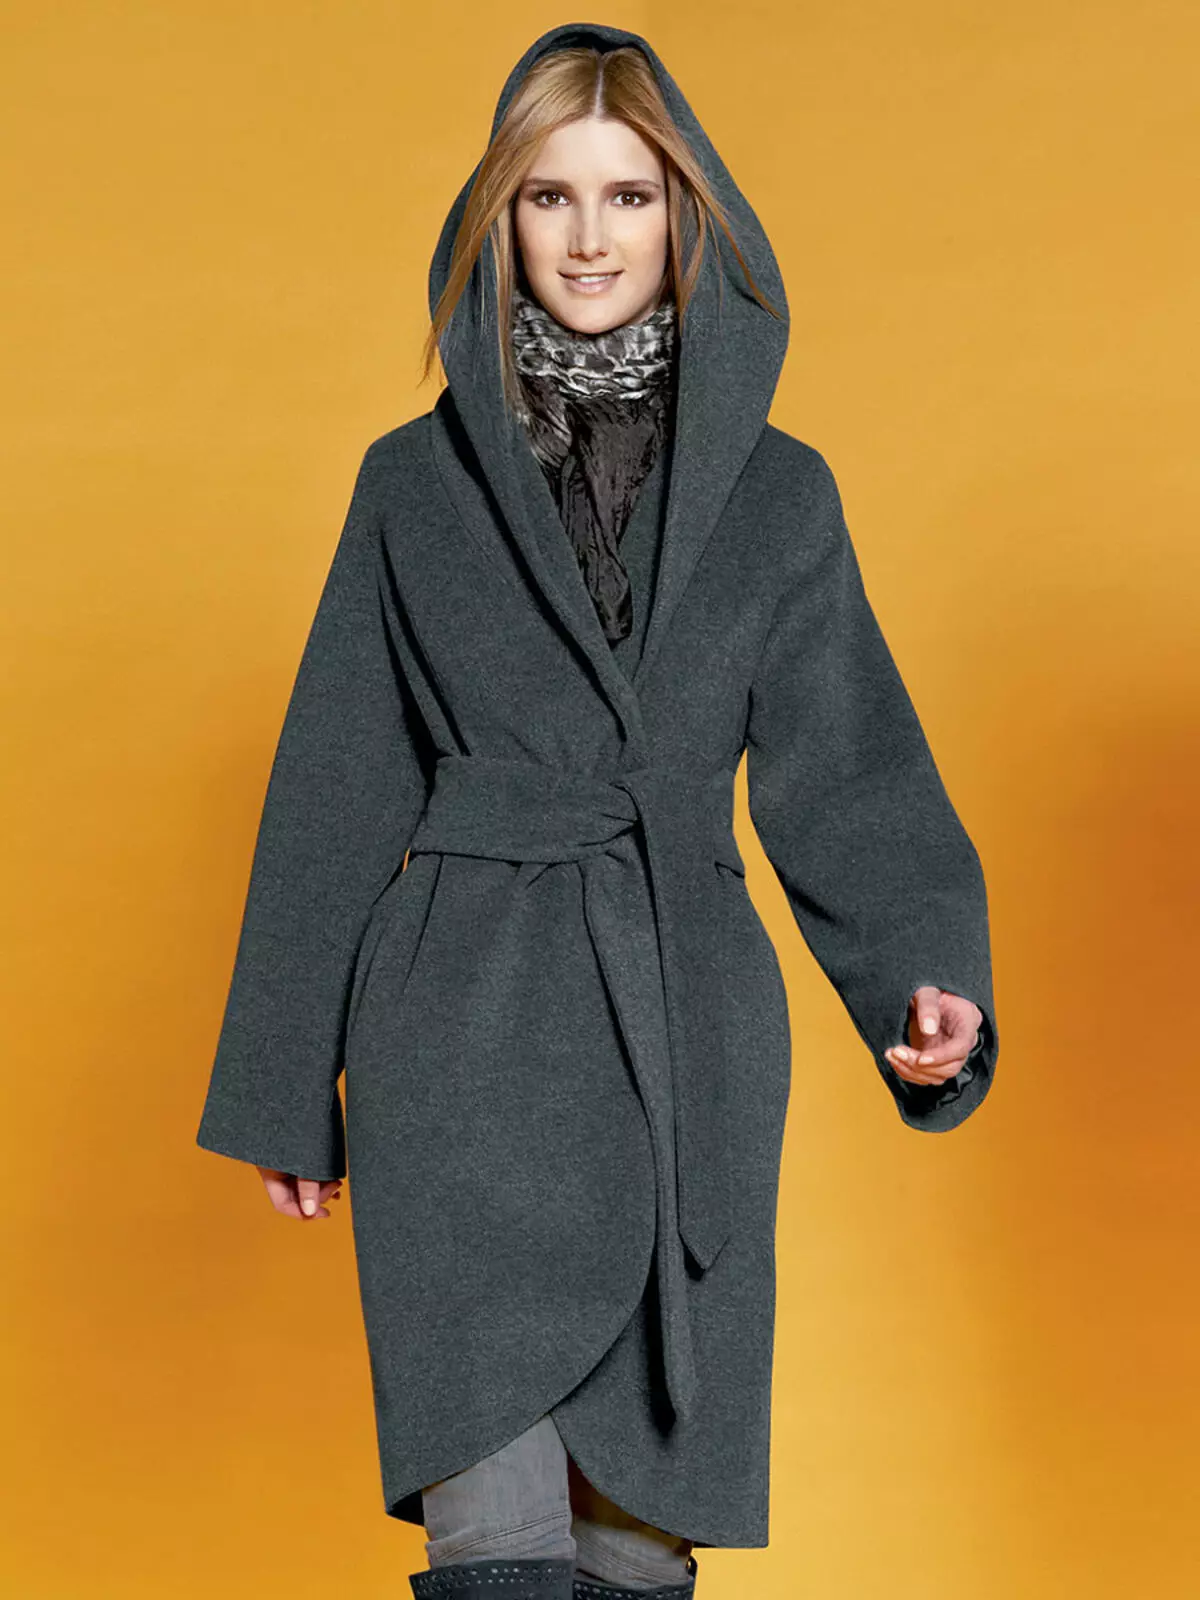 कोट-रोब (5 9 फोटो): एक बेल्ट के साथ, एक गैलेंट प्रकार का कोट पहनने के साथ, एक हुड के साथ, एक स्नान वस्त्र 2021 के रूप में, जिसके साथ जूता पहने हुए, शॉर्ट 570_19